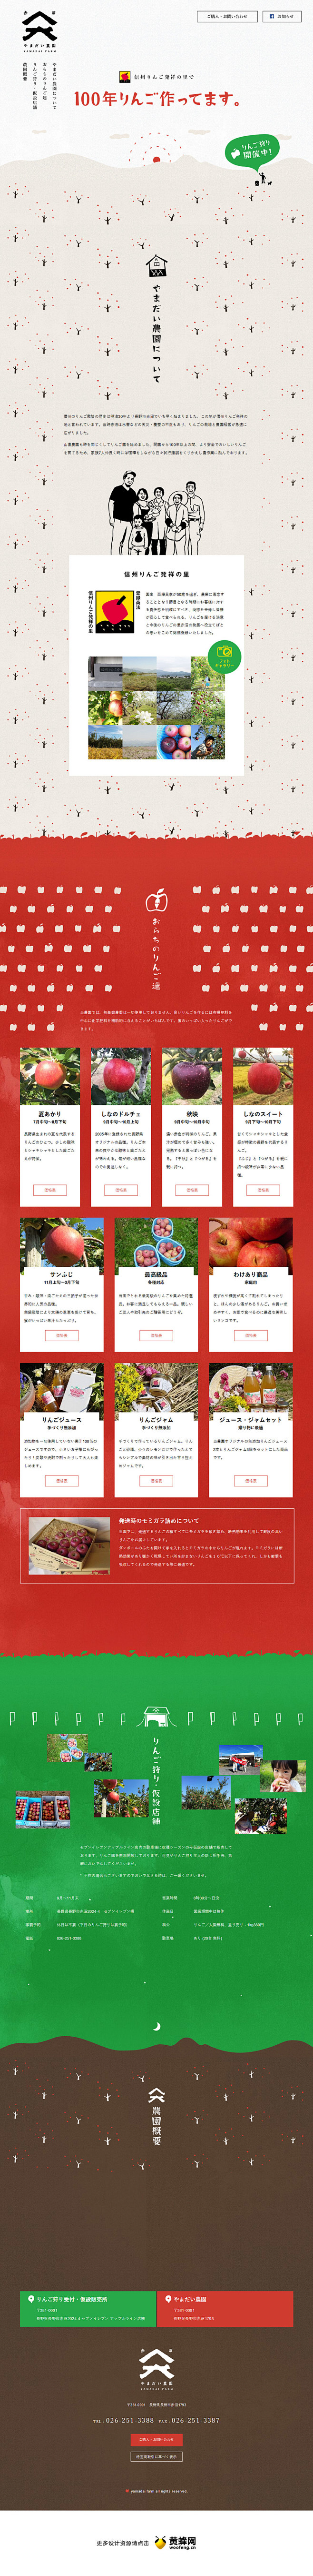 日本农品苹果园网站，来源自黄蜂网http...